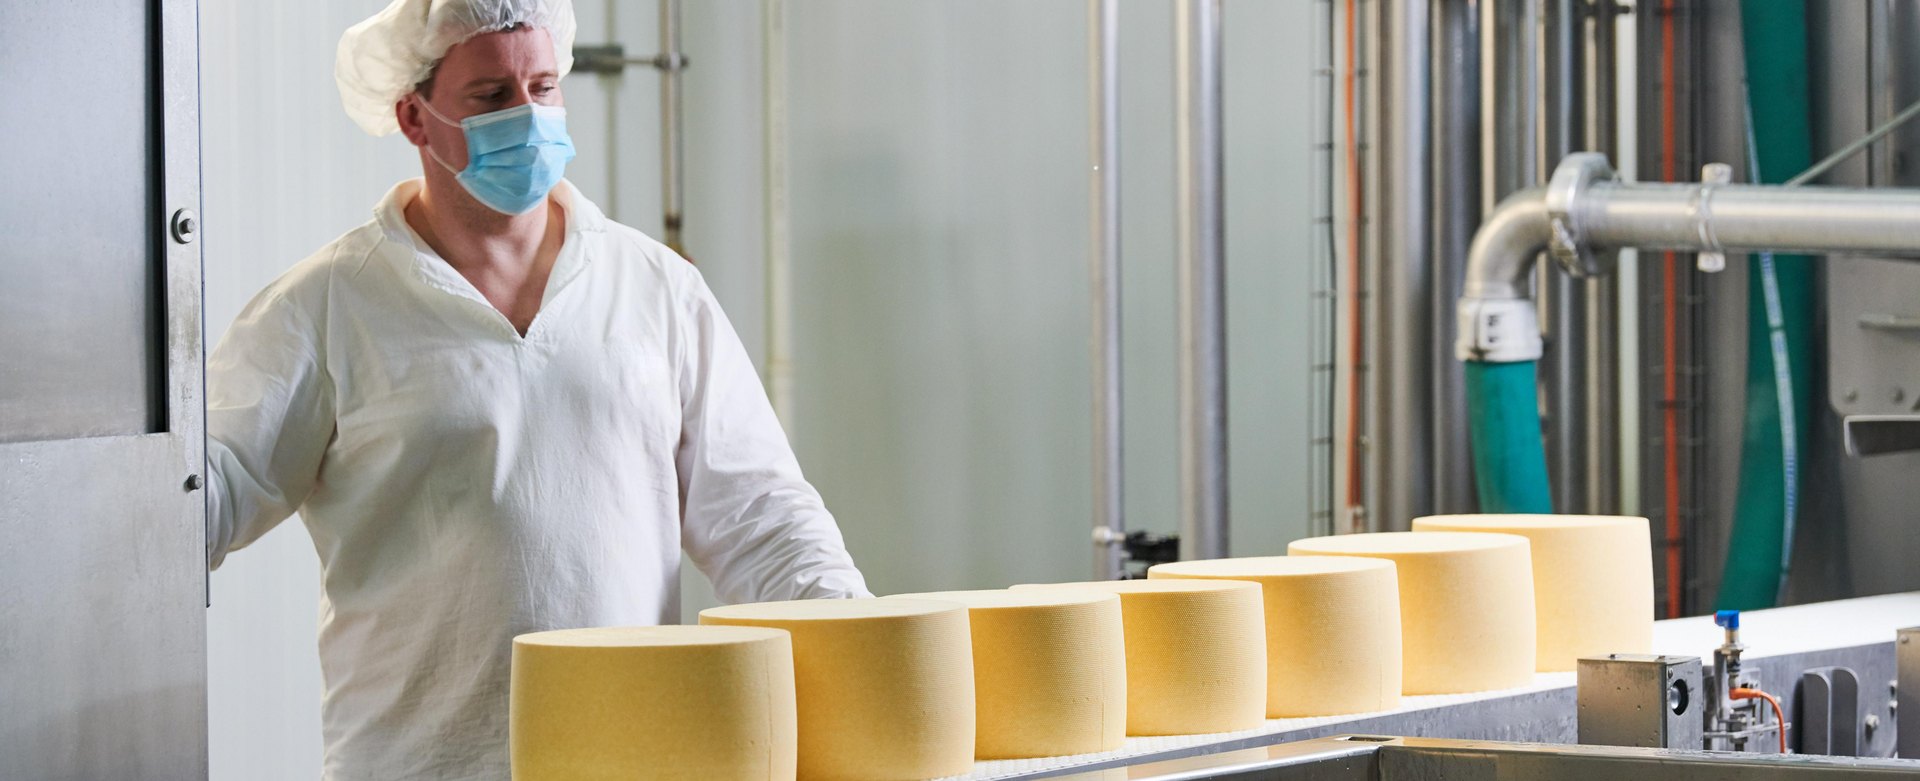 Ein Mitarbeiter eines Milchverarbeitungsbetriebes kontrolliert fertigen Käse auf einem Förderband.